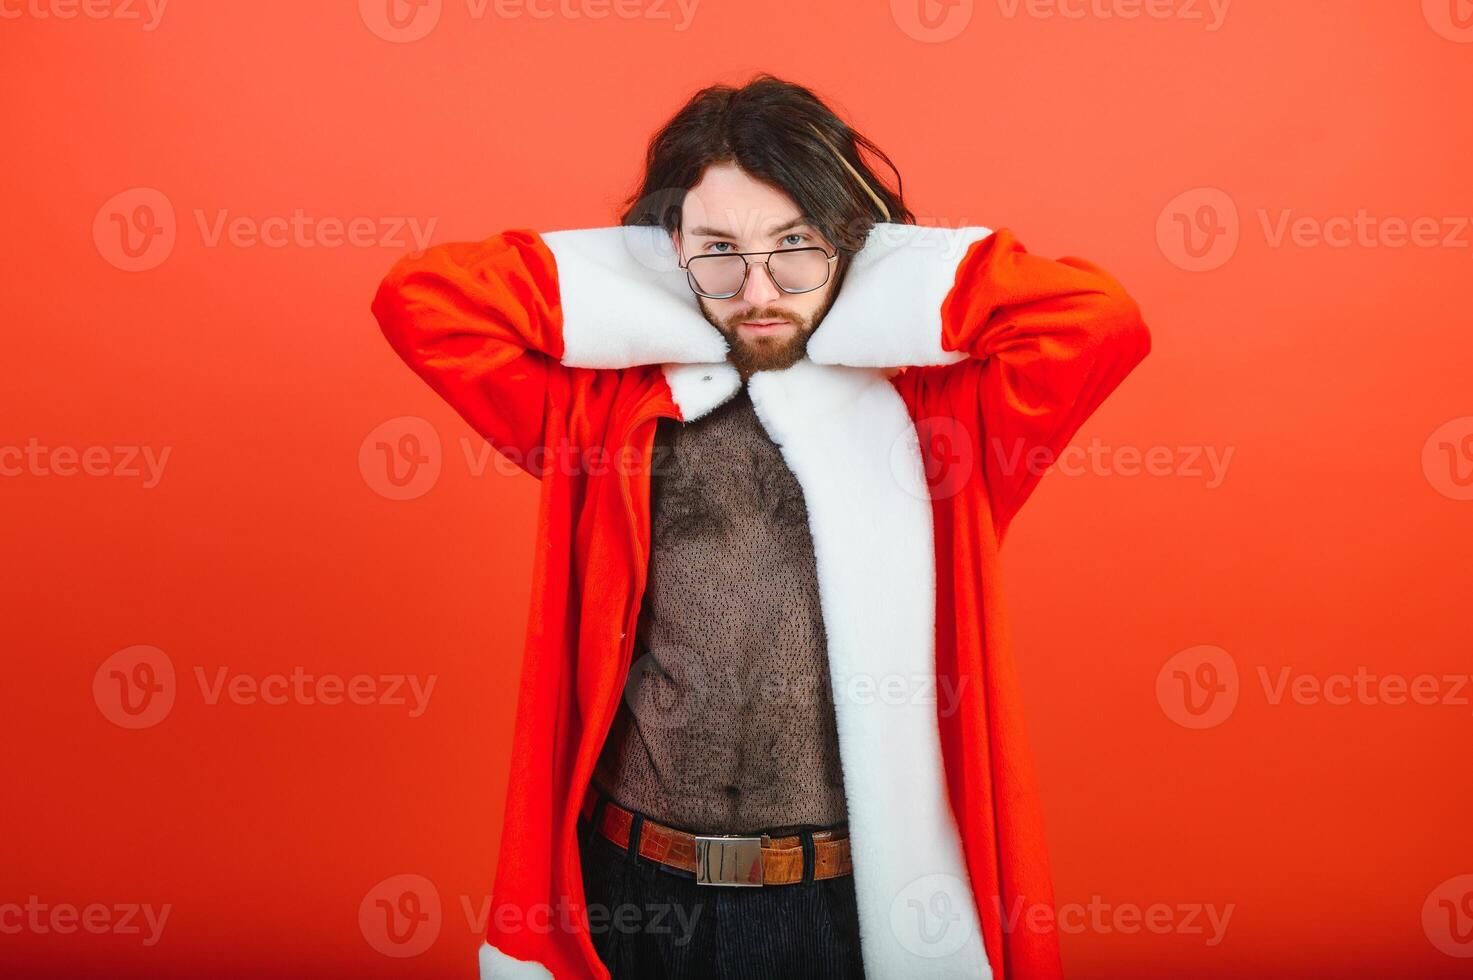 nieuw jaar homo feest. een homo Mens in een de kerstman pak. gelijkwaardigheid. lgbt gemeenschap. foto